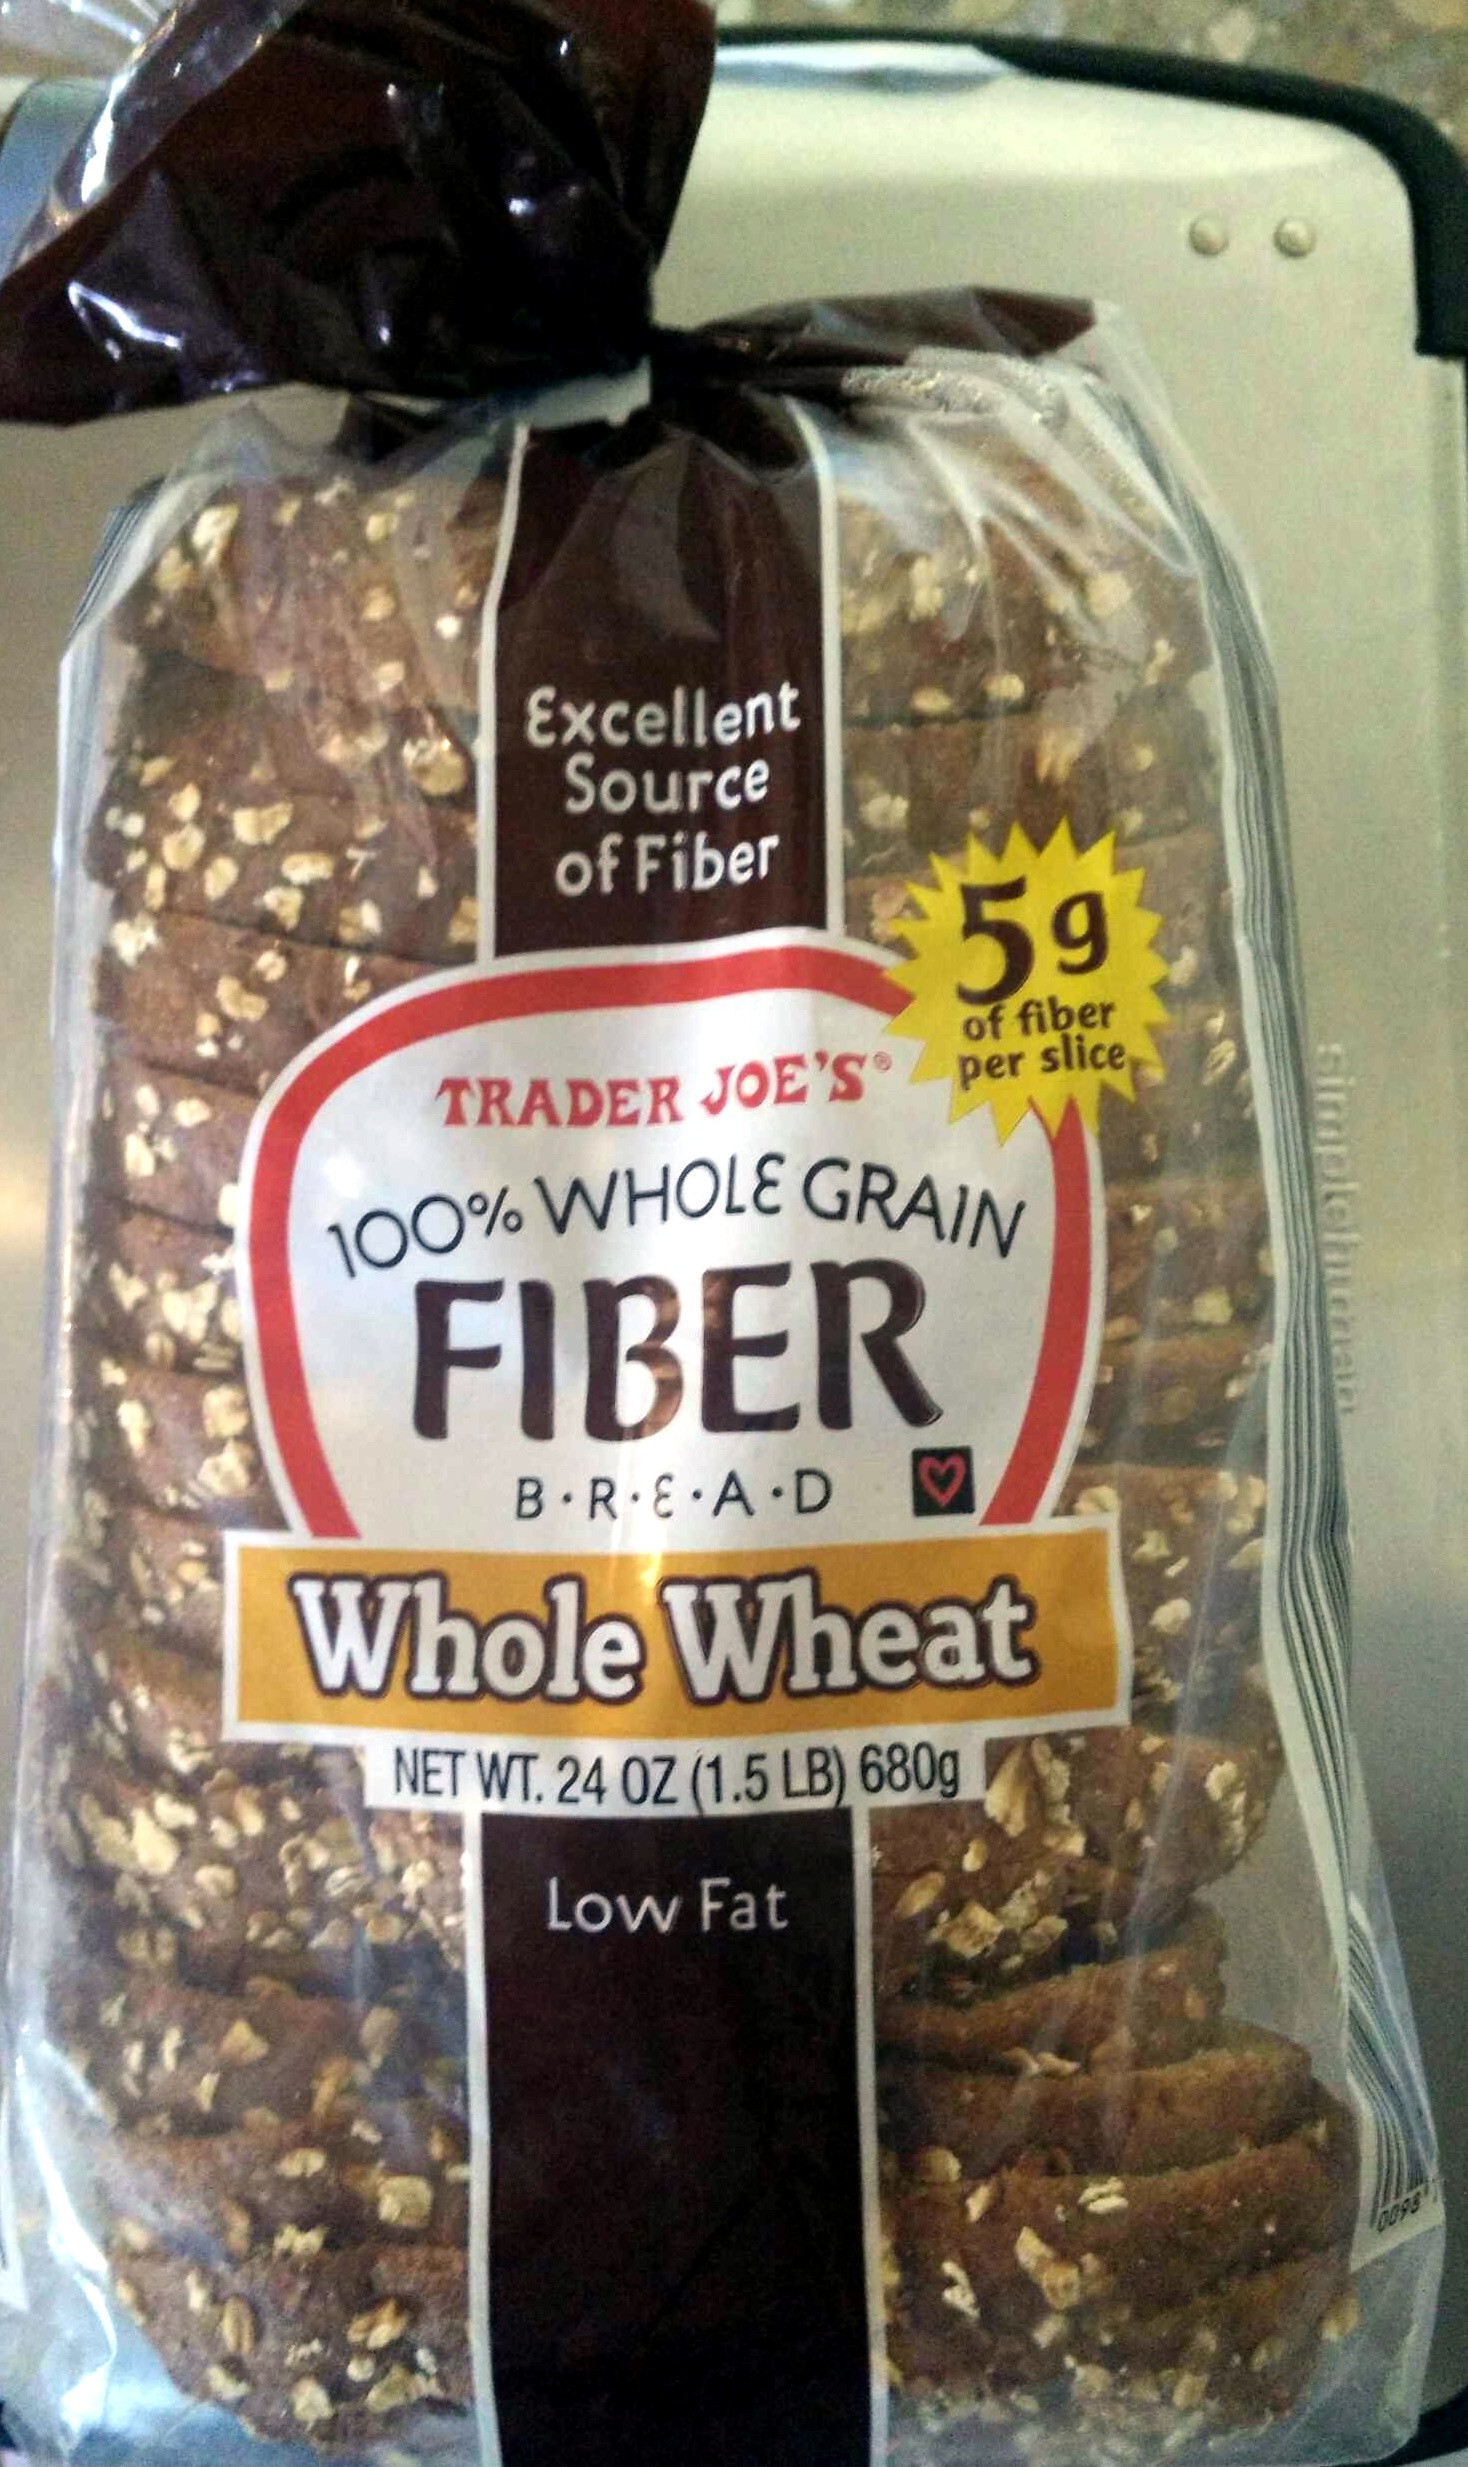 Fiber In Whole Grain Bread
 Whole Grain Fiber Bread Trader Joe s 24 OZ 1 5